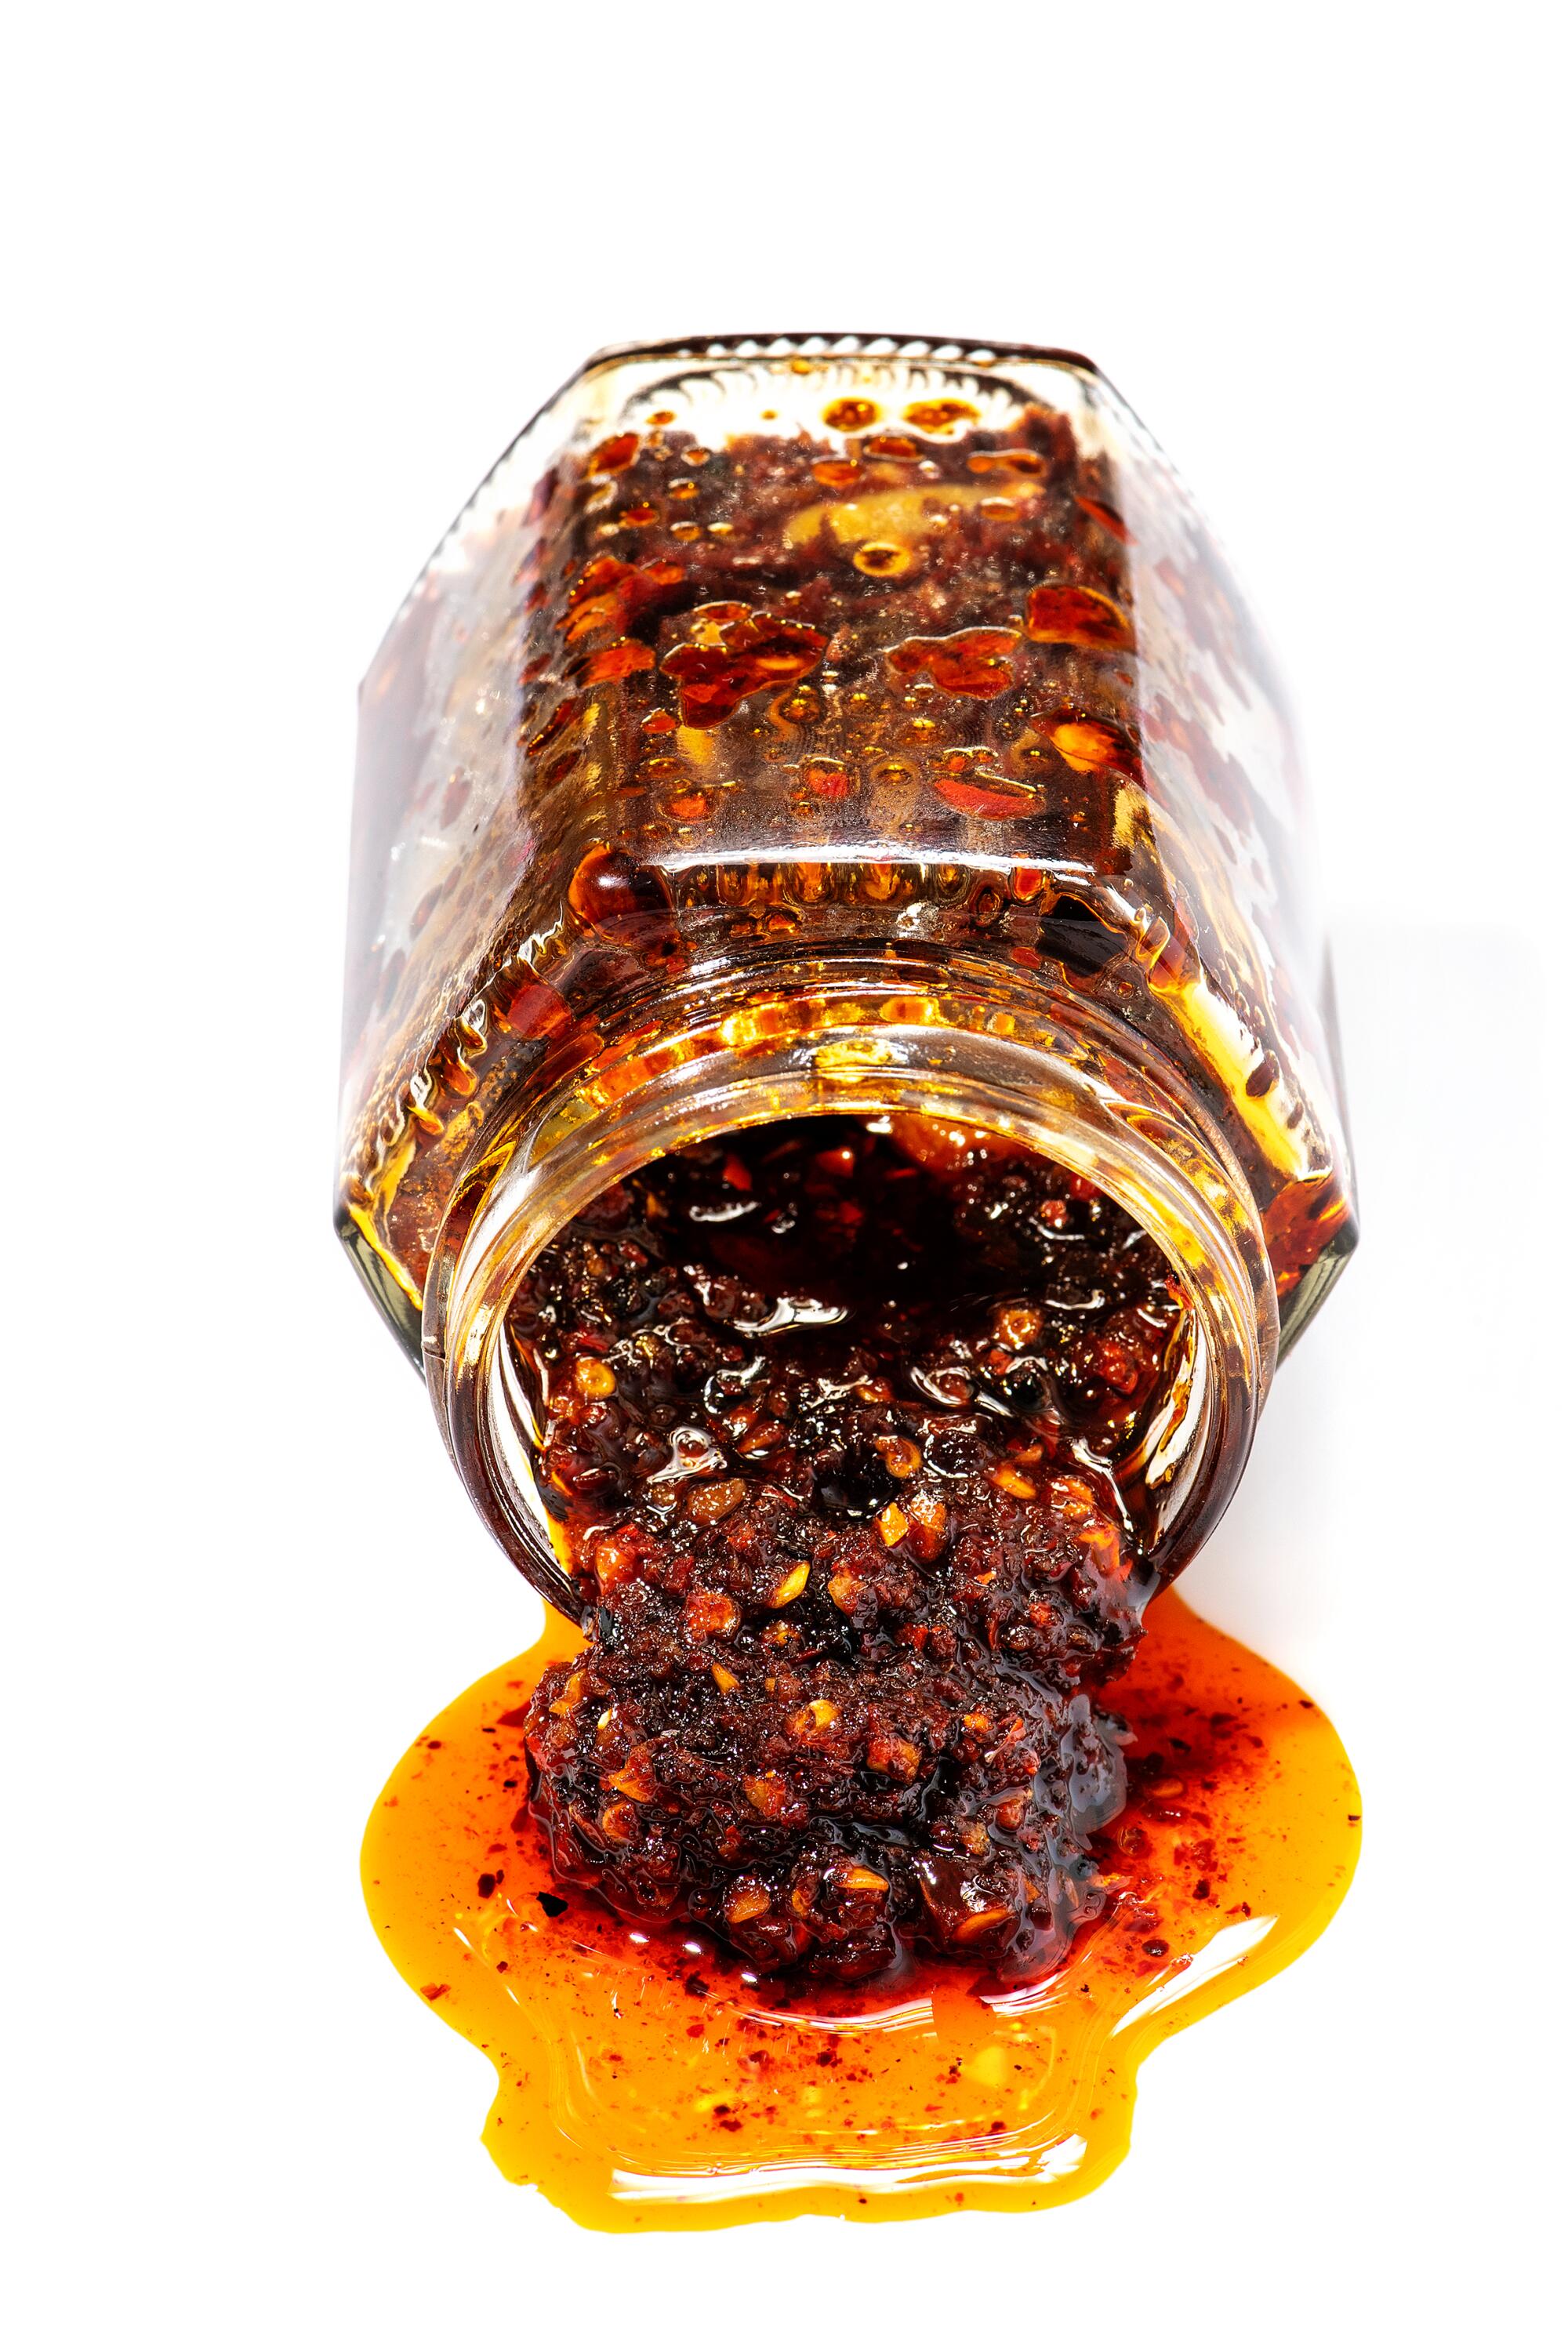 Un pot de sauce chili peut être trouvé sur la plupart des tables des restaurants servant des raviolis dans la vallée de San Gabriel.